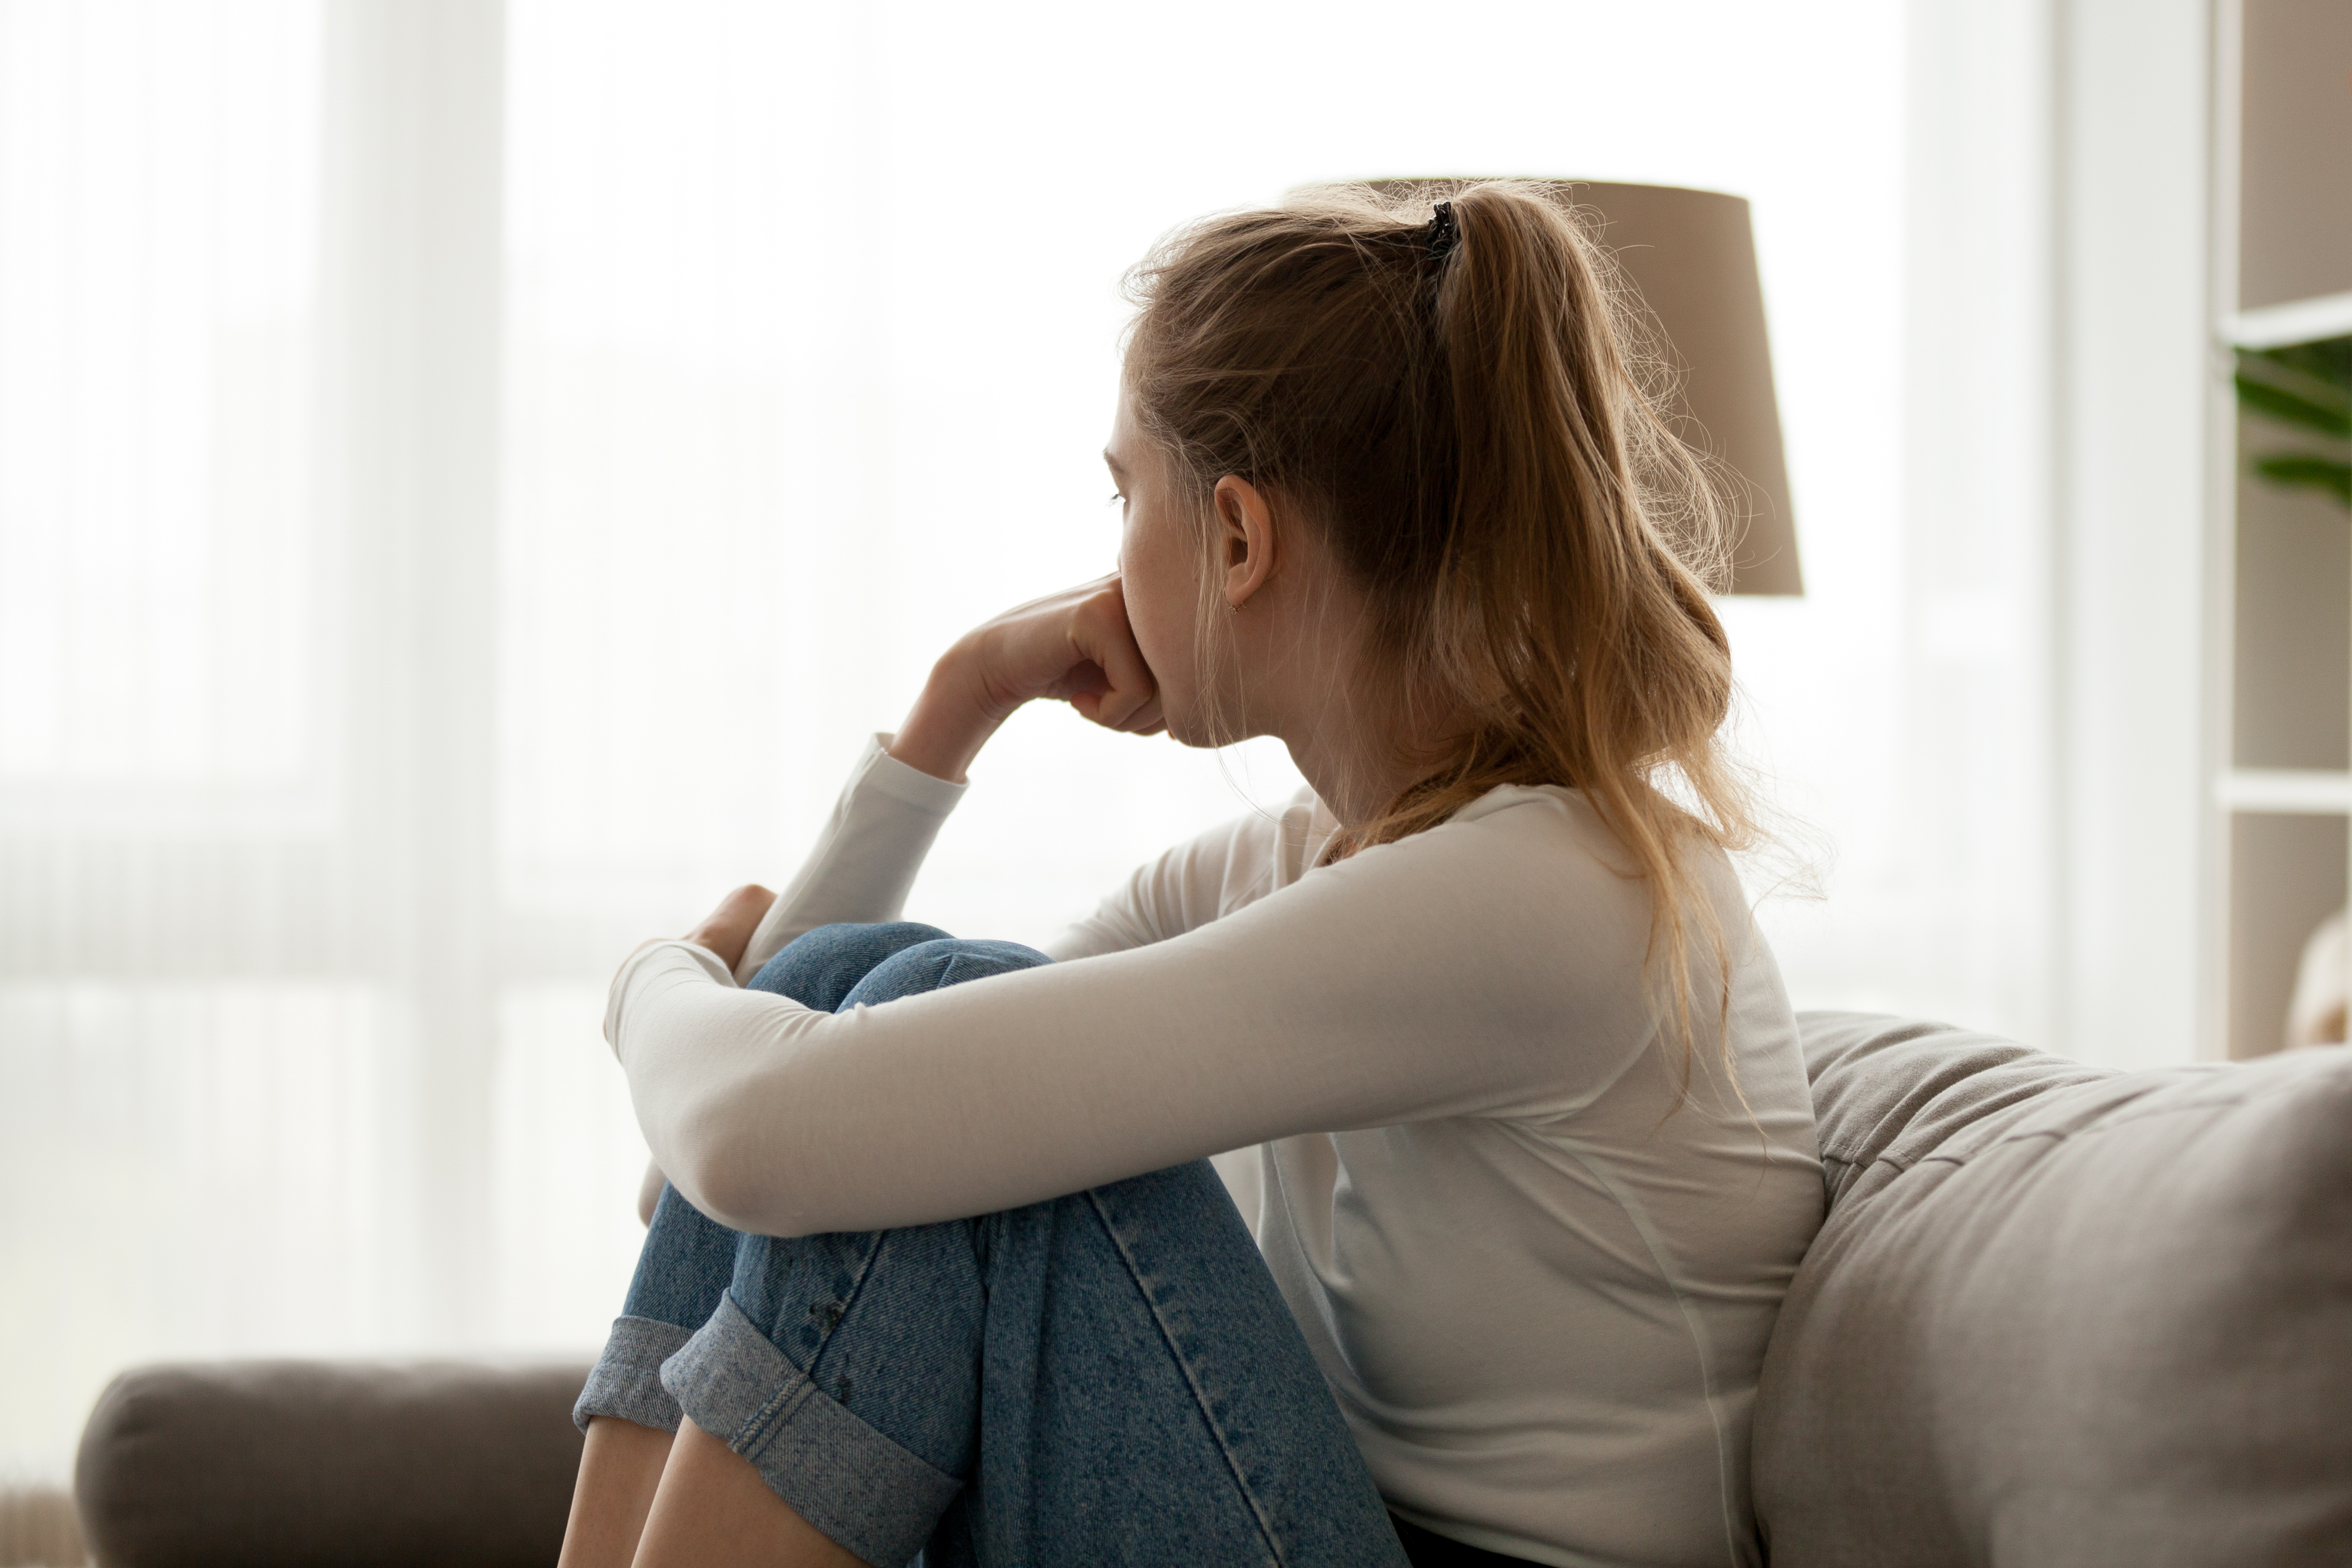  اسباب الاكتئاب عند المراهقين وأعراضه وطرق التعامل معه